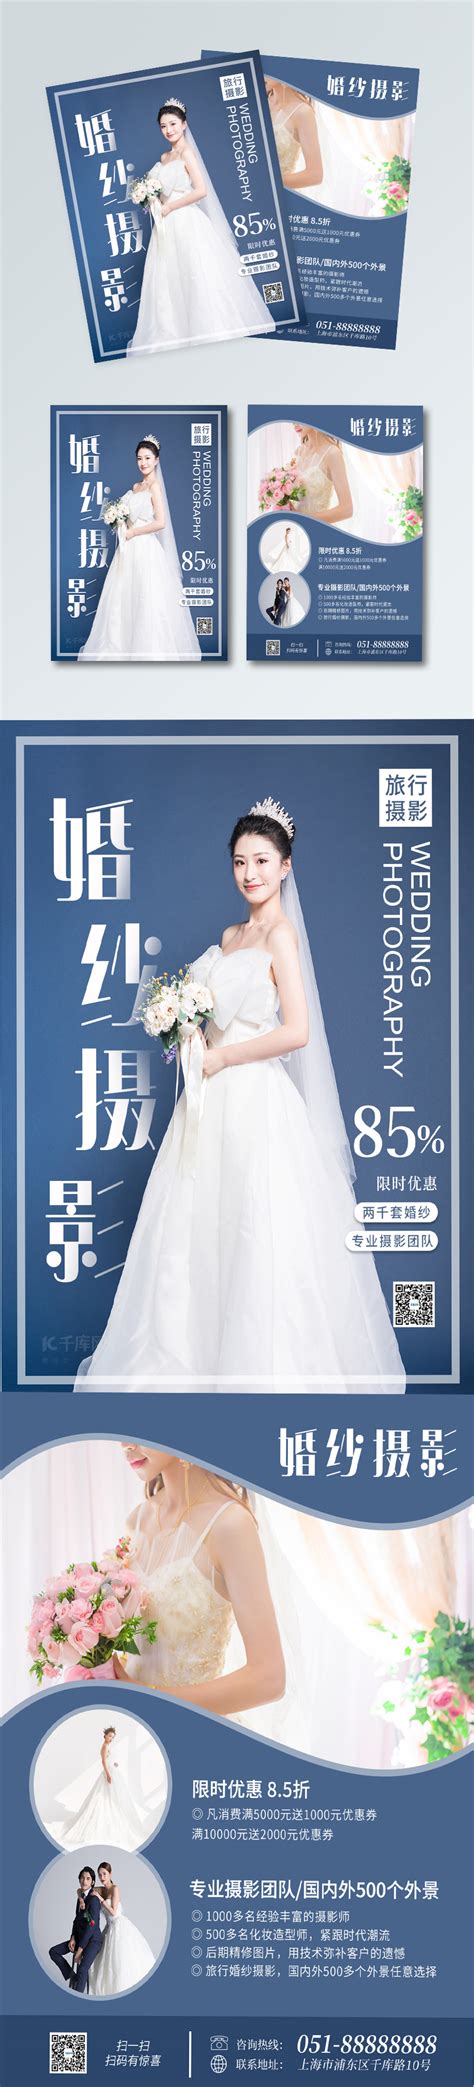 婚纱摄影公众号推广宣传